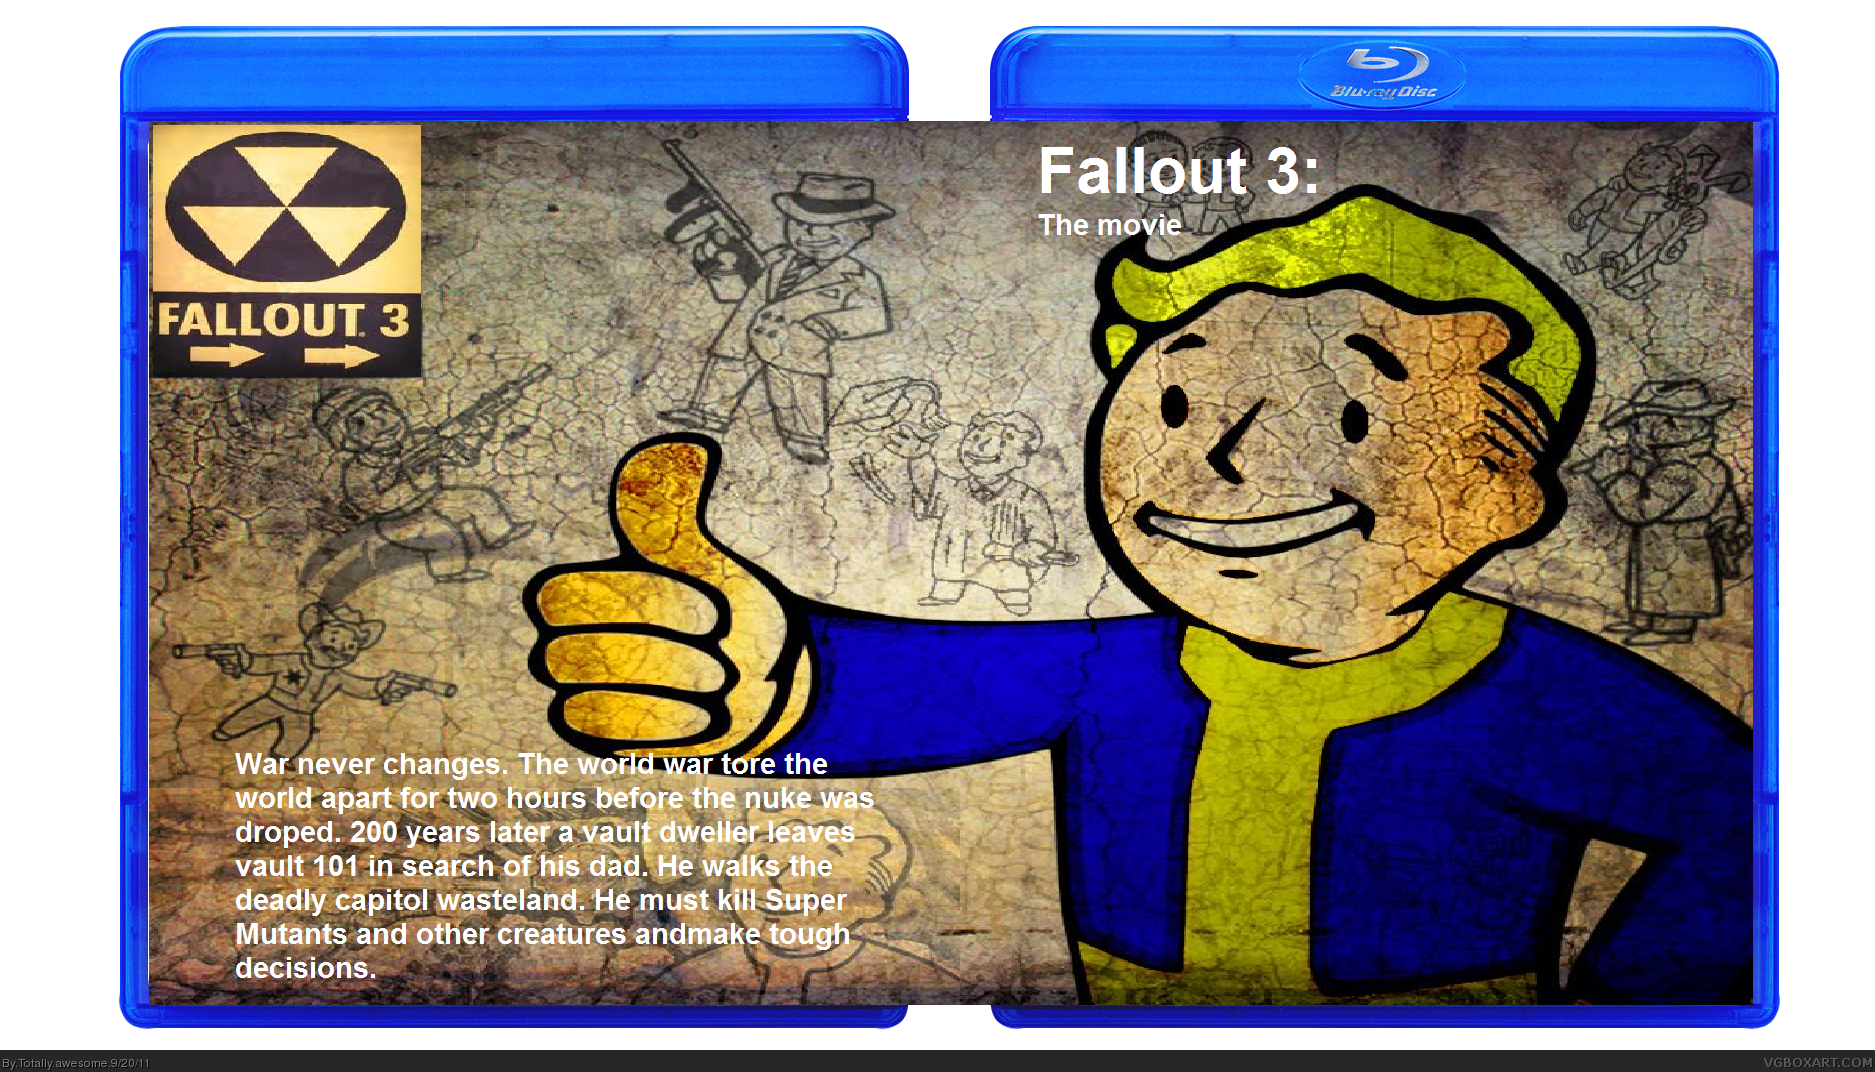 fallout 3 box cover